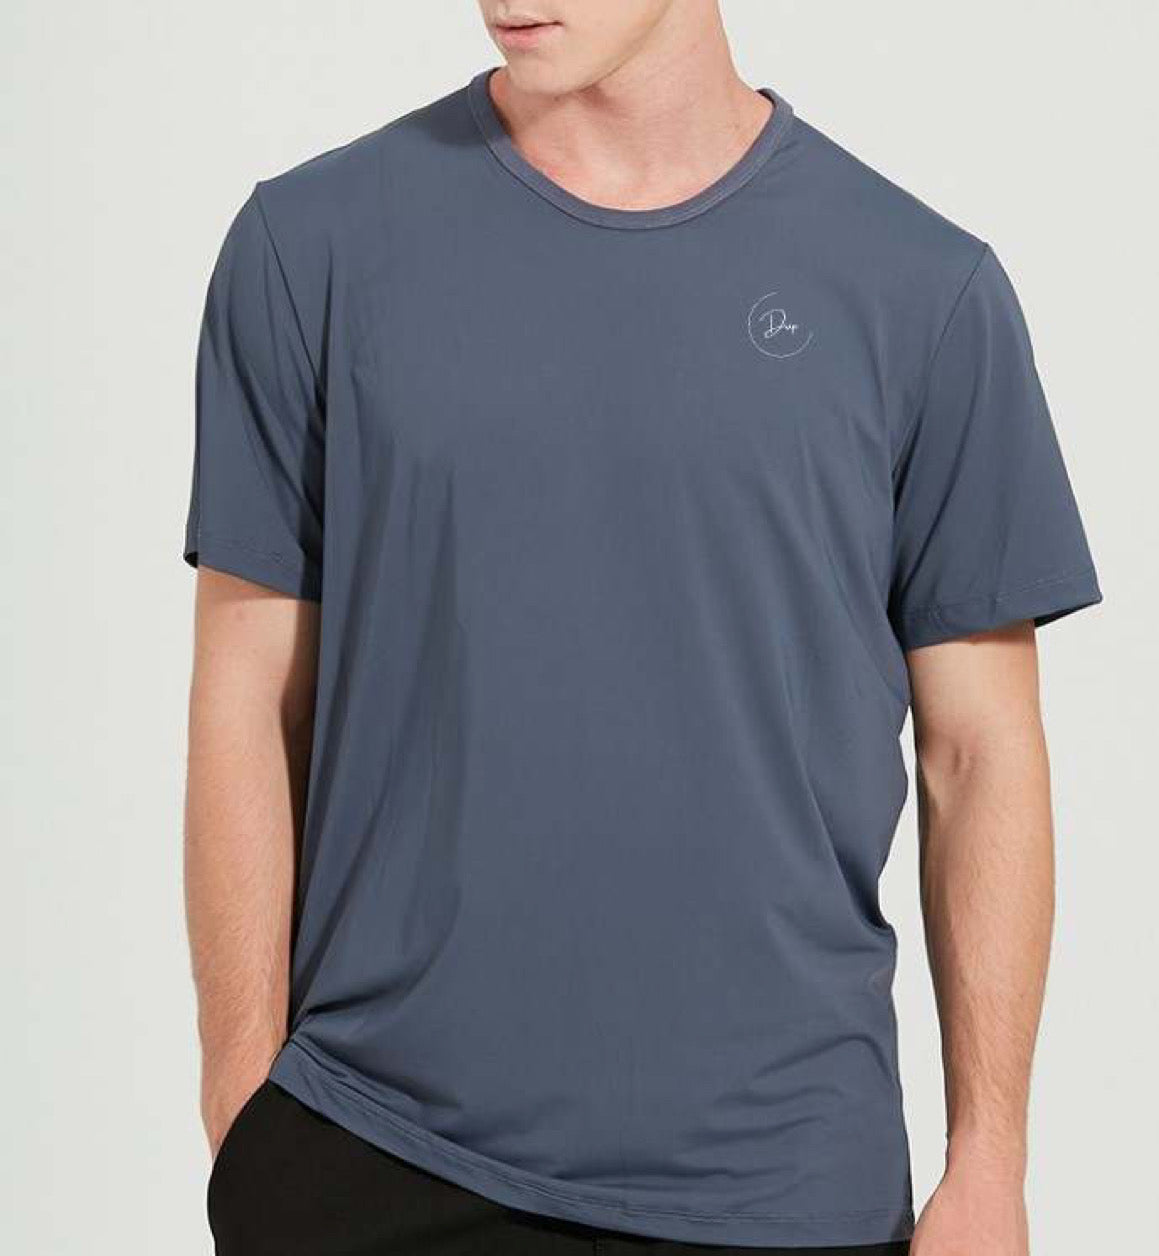 Men's blue workout shirt 